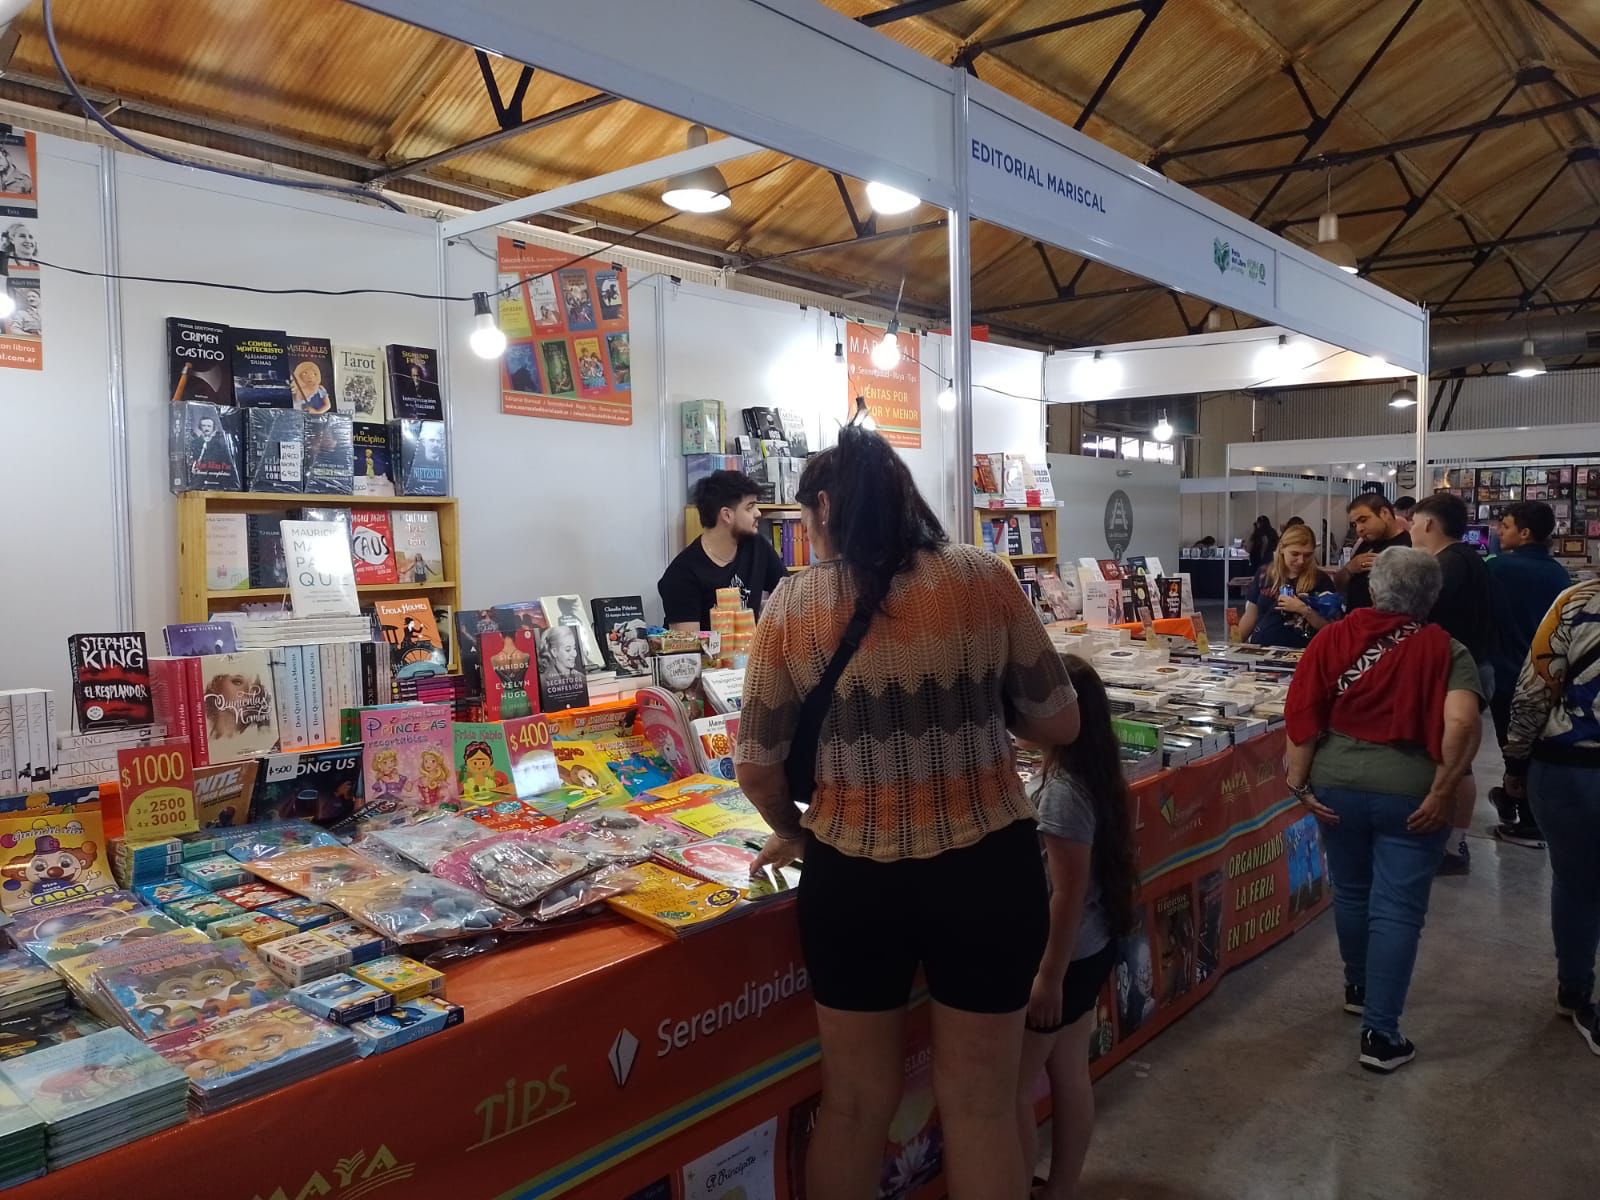 La Feria del Libro Avellaneda convocó a una gran cantidad de visitantes